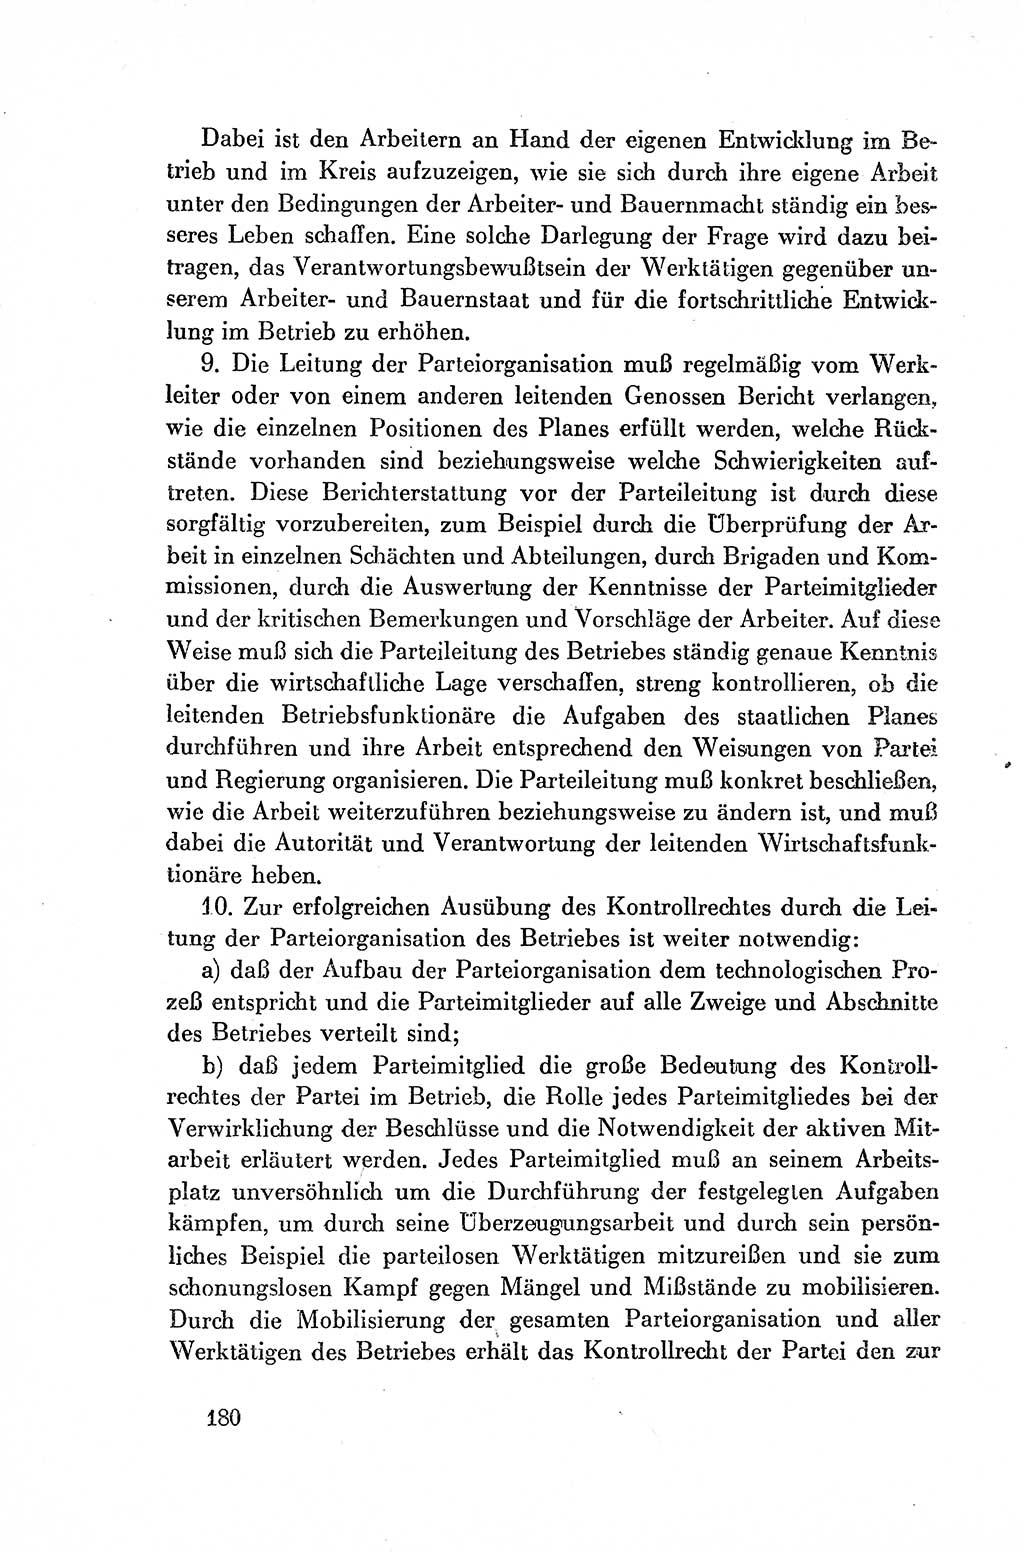 Dokumente der Sozialistischen Einheitspartei Deutschlands (SED) [Deutsche Demokratische Republik (DDR)] 1954-1955, Seite 180 (Dok. SED DDR 1954-1955, S. 180)